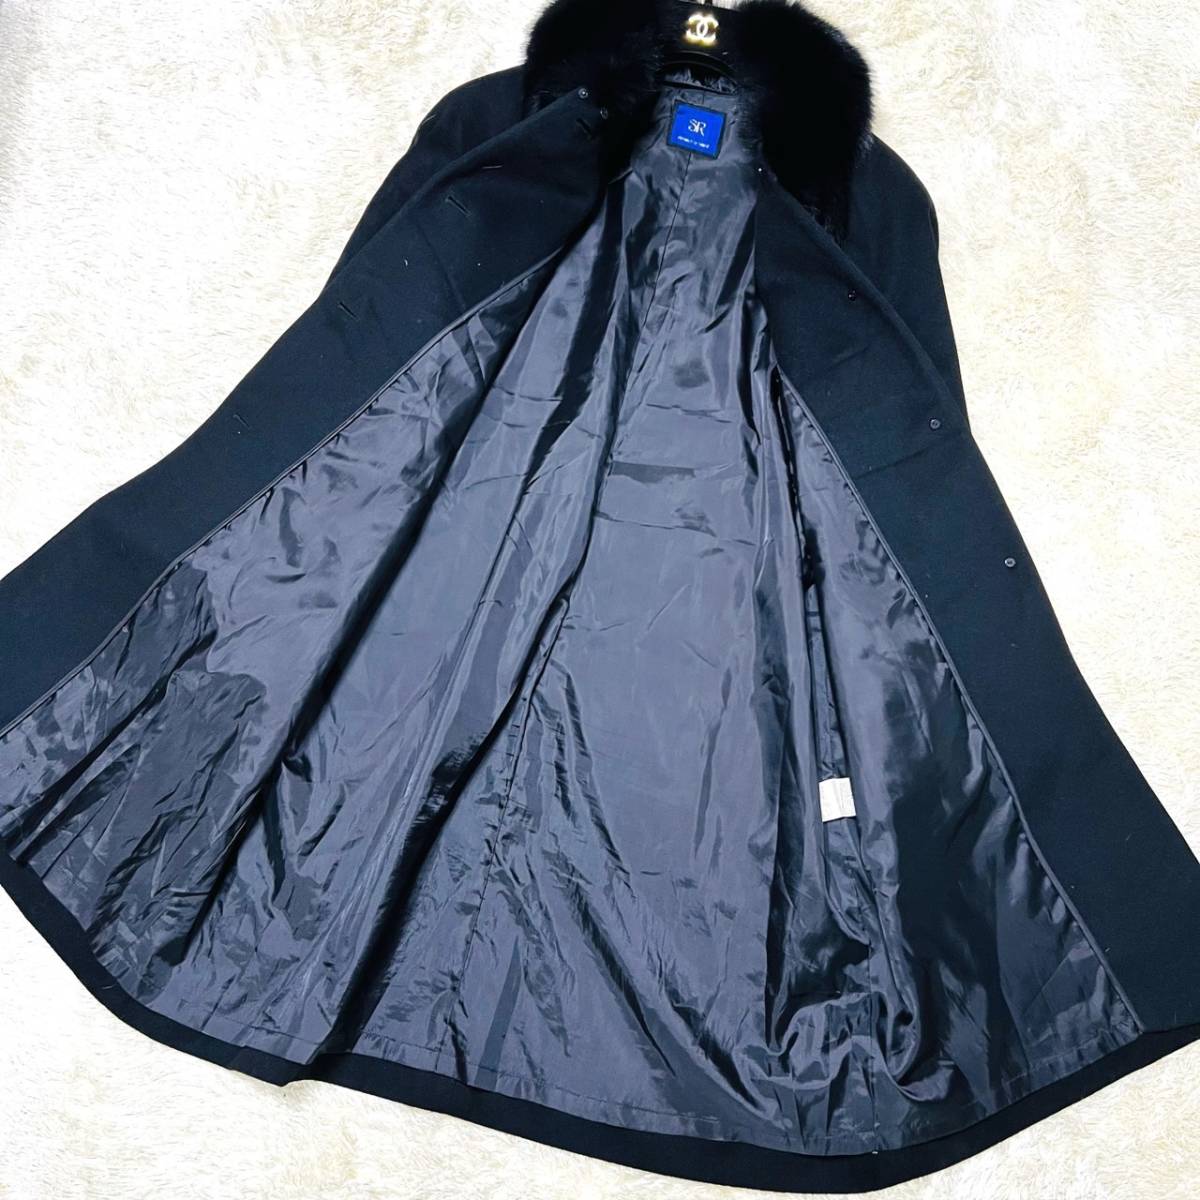 * кашемир 100%& мех лисы * SR product sanso длинное пальто L размер чёрный черный кашемир лиса женский пальто внешний 